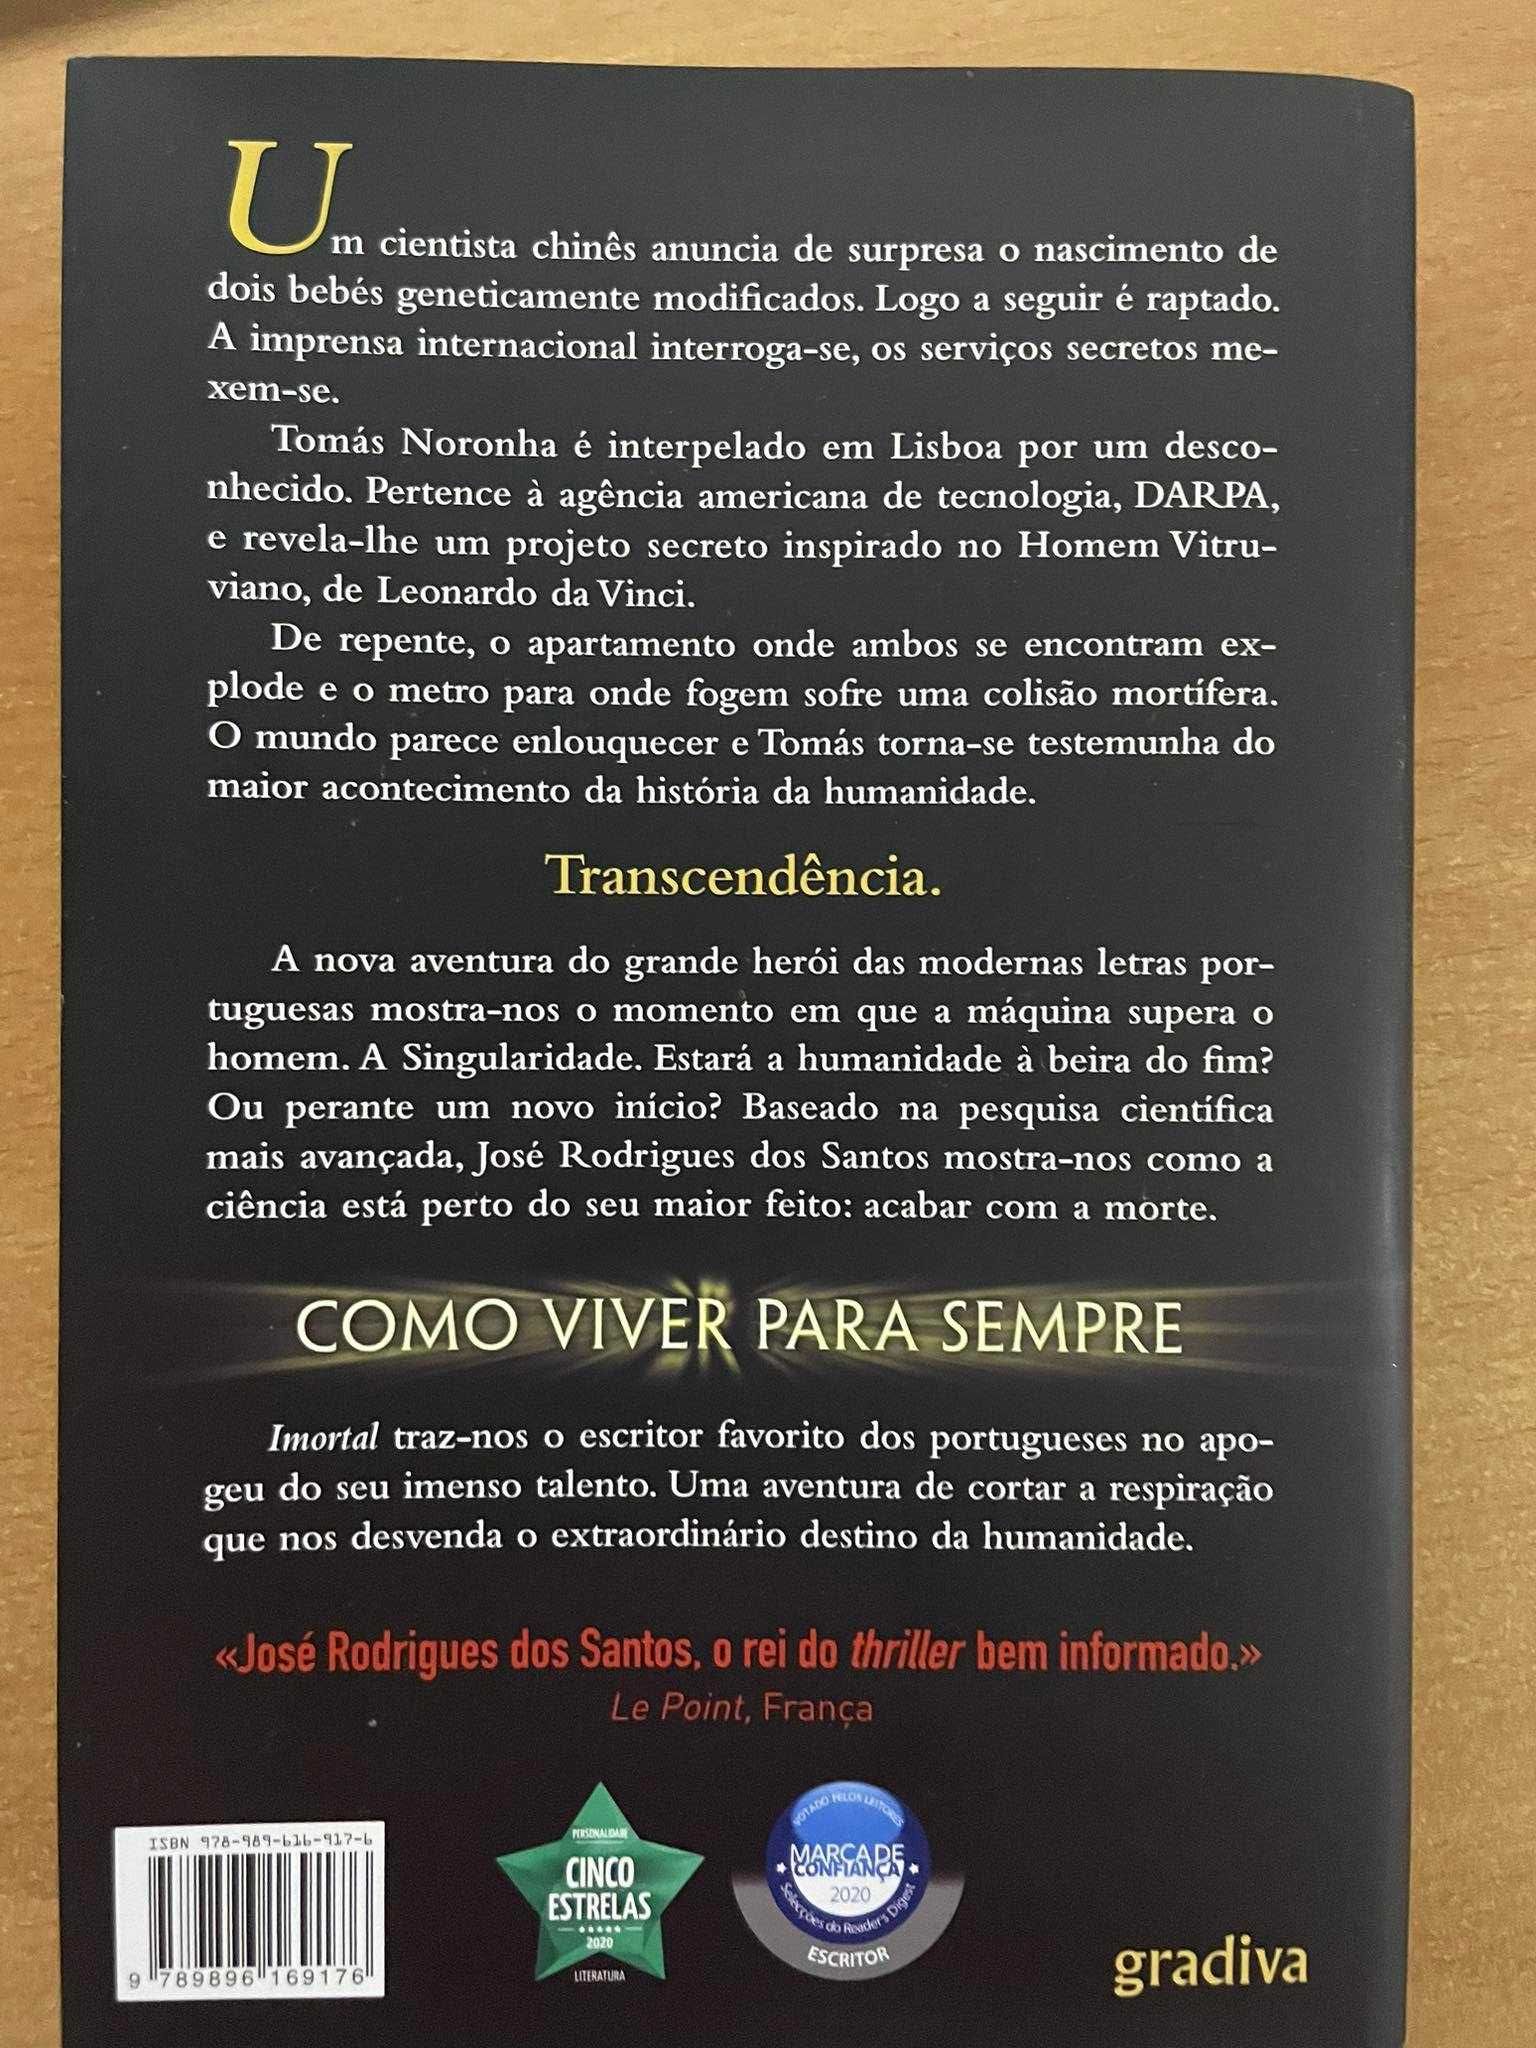 Livro "Imortal" de José Rodrigues dos Santos